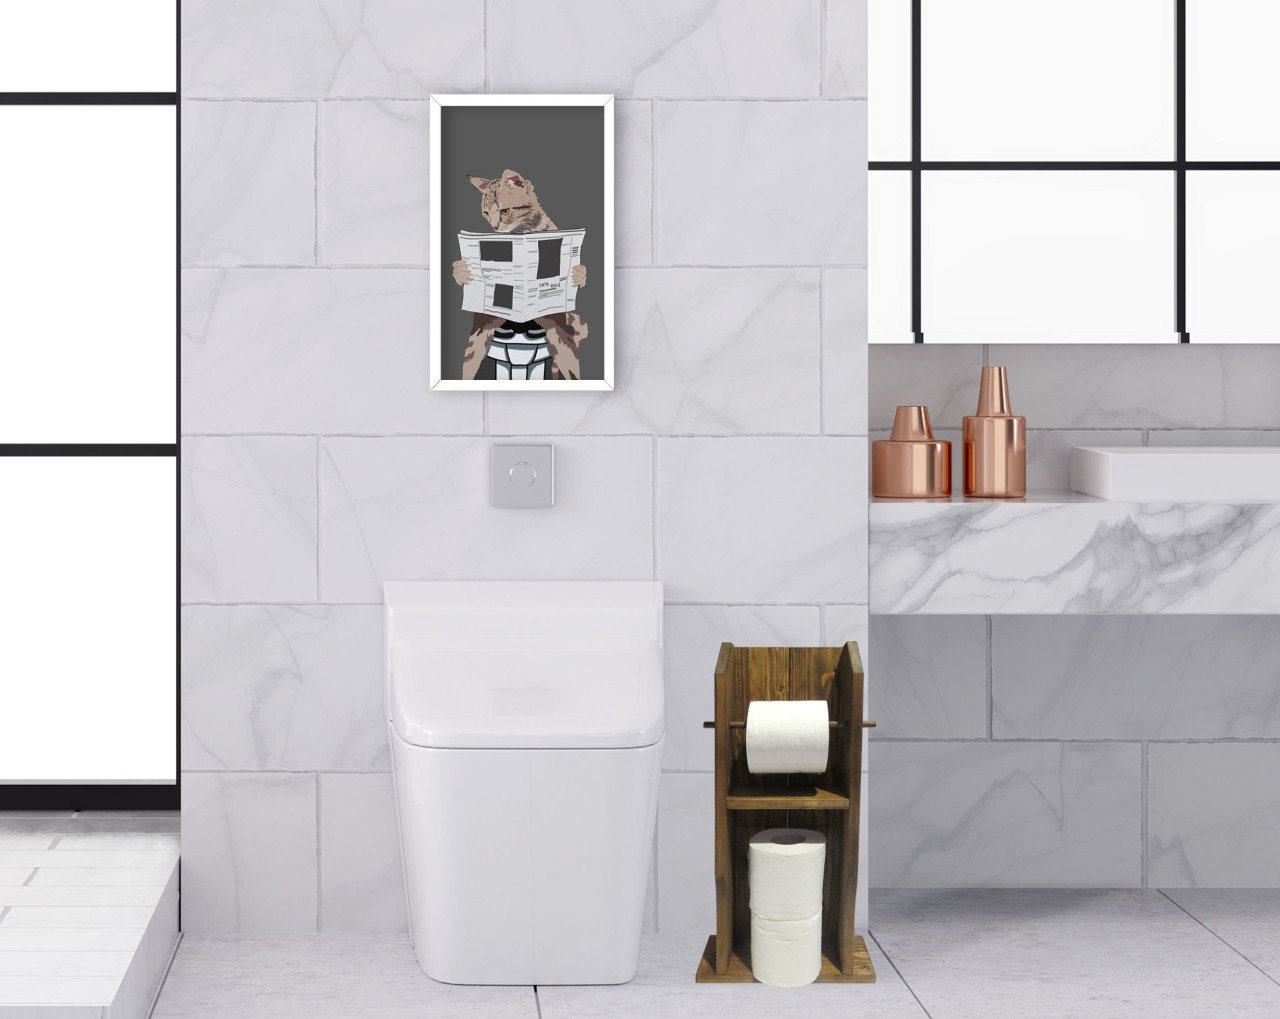 BK Home Doğal Masif Ahşap Tuvalet Kağıtlığı ve Dekoratif Ahşap Beyaz Çerçeveli Tablo Seti-15